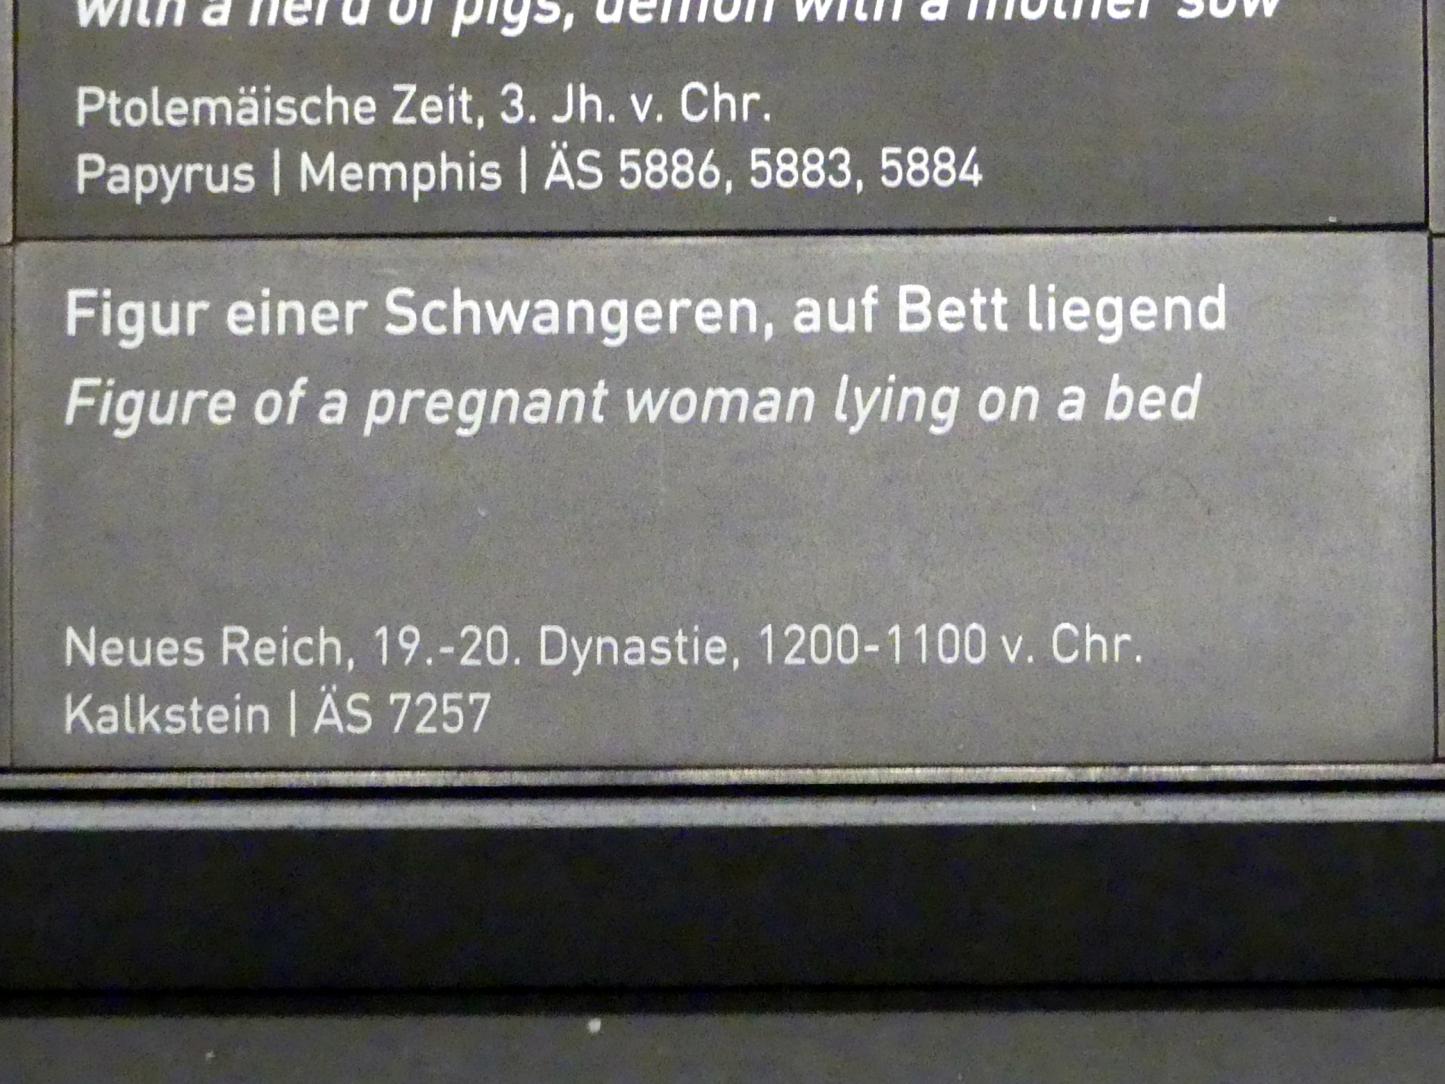 Figur einer Schwangeren, auf Bett liegend, Neues Reich, 953 - 887 v. Chr., 1200 - 1100 v. Chr., Bild 3/3